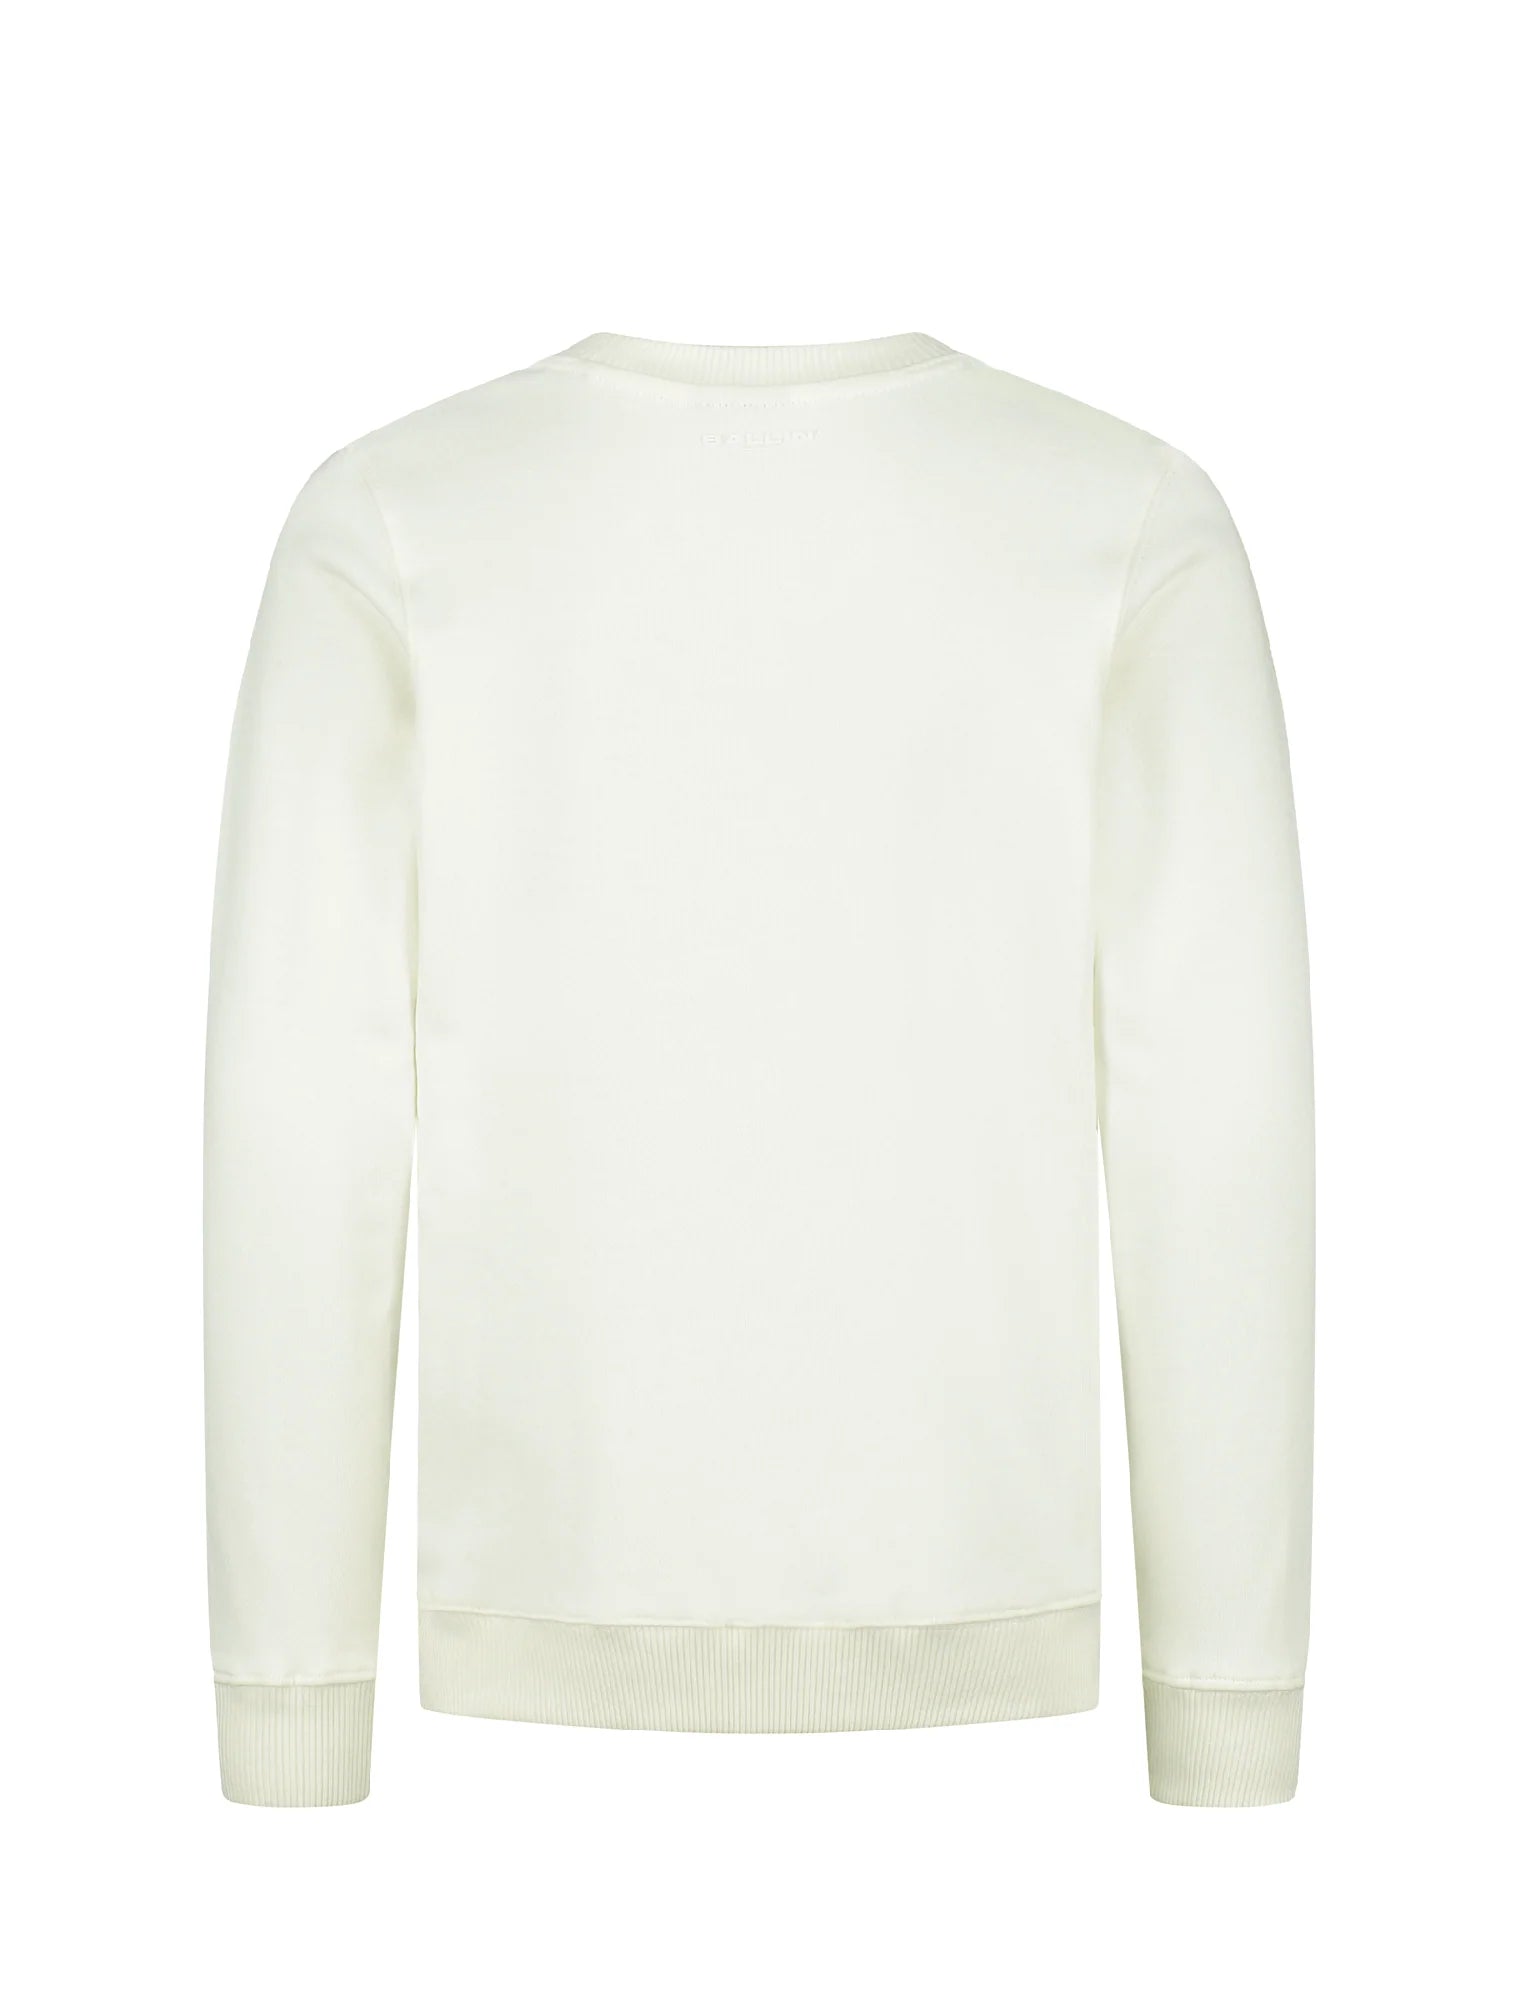 Unisexs Sweater crewneck van Ballin Amsterdam in de kleur Off white in maat 176.